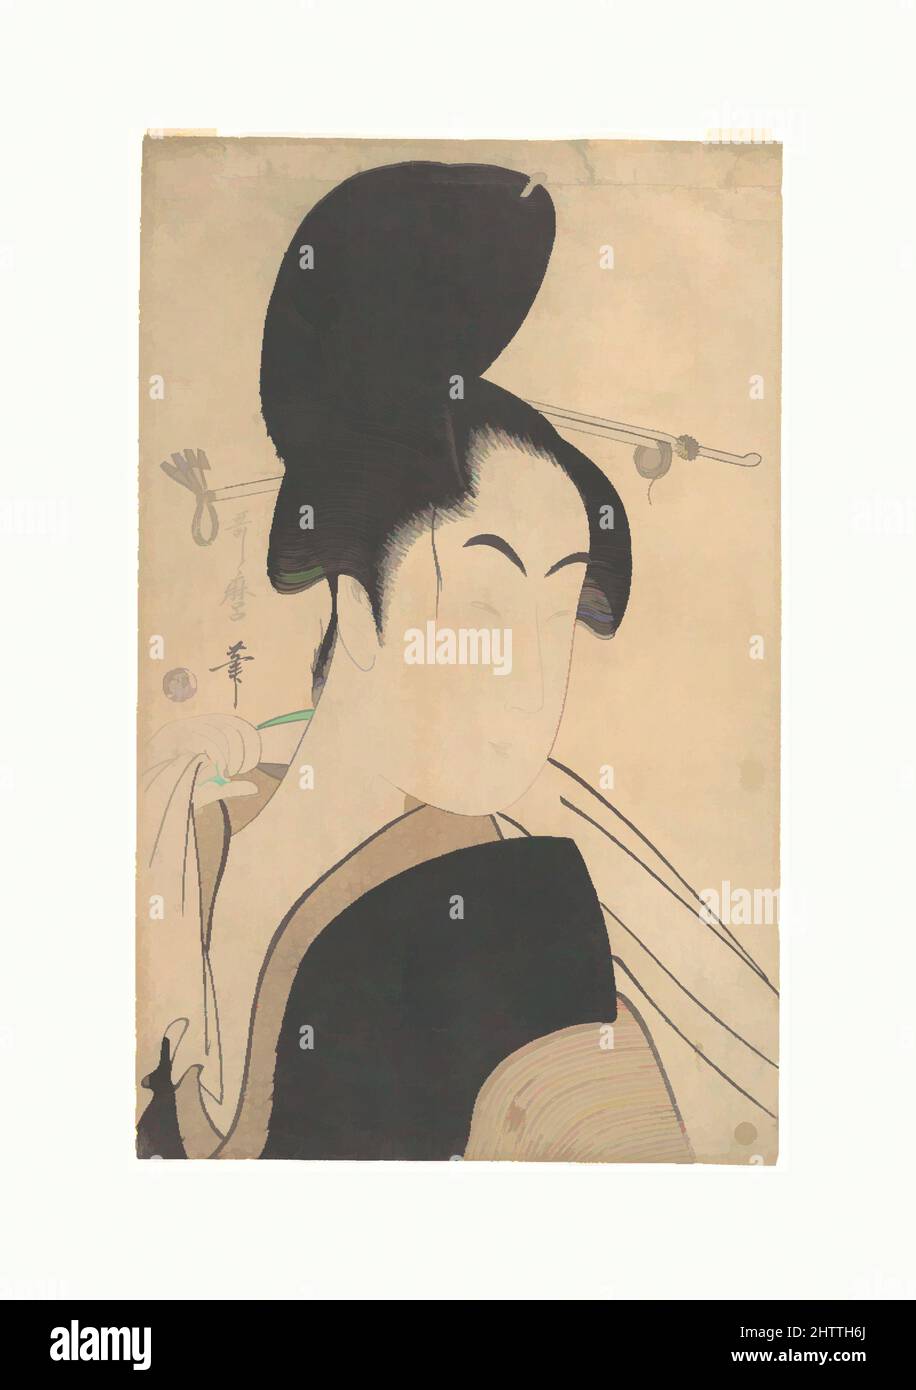 Art inspiré par la femme après un bain, période Edo (1615–1868), env. 1795, Japon, imprimé polychrome sur bois ; encre et couleur sur papier, H. 15 po. (38,1 cm) ; avec 9 1/2 po (24,1 cm), Prints, Kitagawa Utamaro (japonais, 1753?–1806, oeuvres classiques modernisées par Artotop avec une touche de modernité. Formes, couleur et valeur, impact visuel accrocheur sur l'art émotions par la liberté d'œuvres d'art d'une manière contemporaine. Un message intemporel qui cherche une nouvelle direction créative. Artistes qui se tournent vers le support numérique et créent le NFT Artotop Banque D'Images